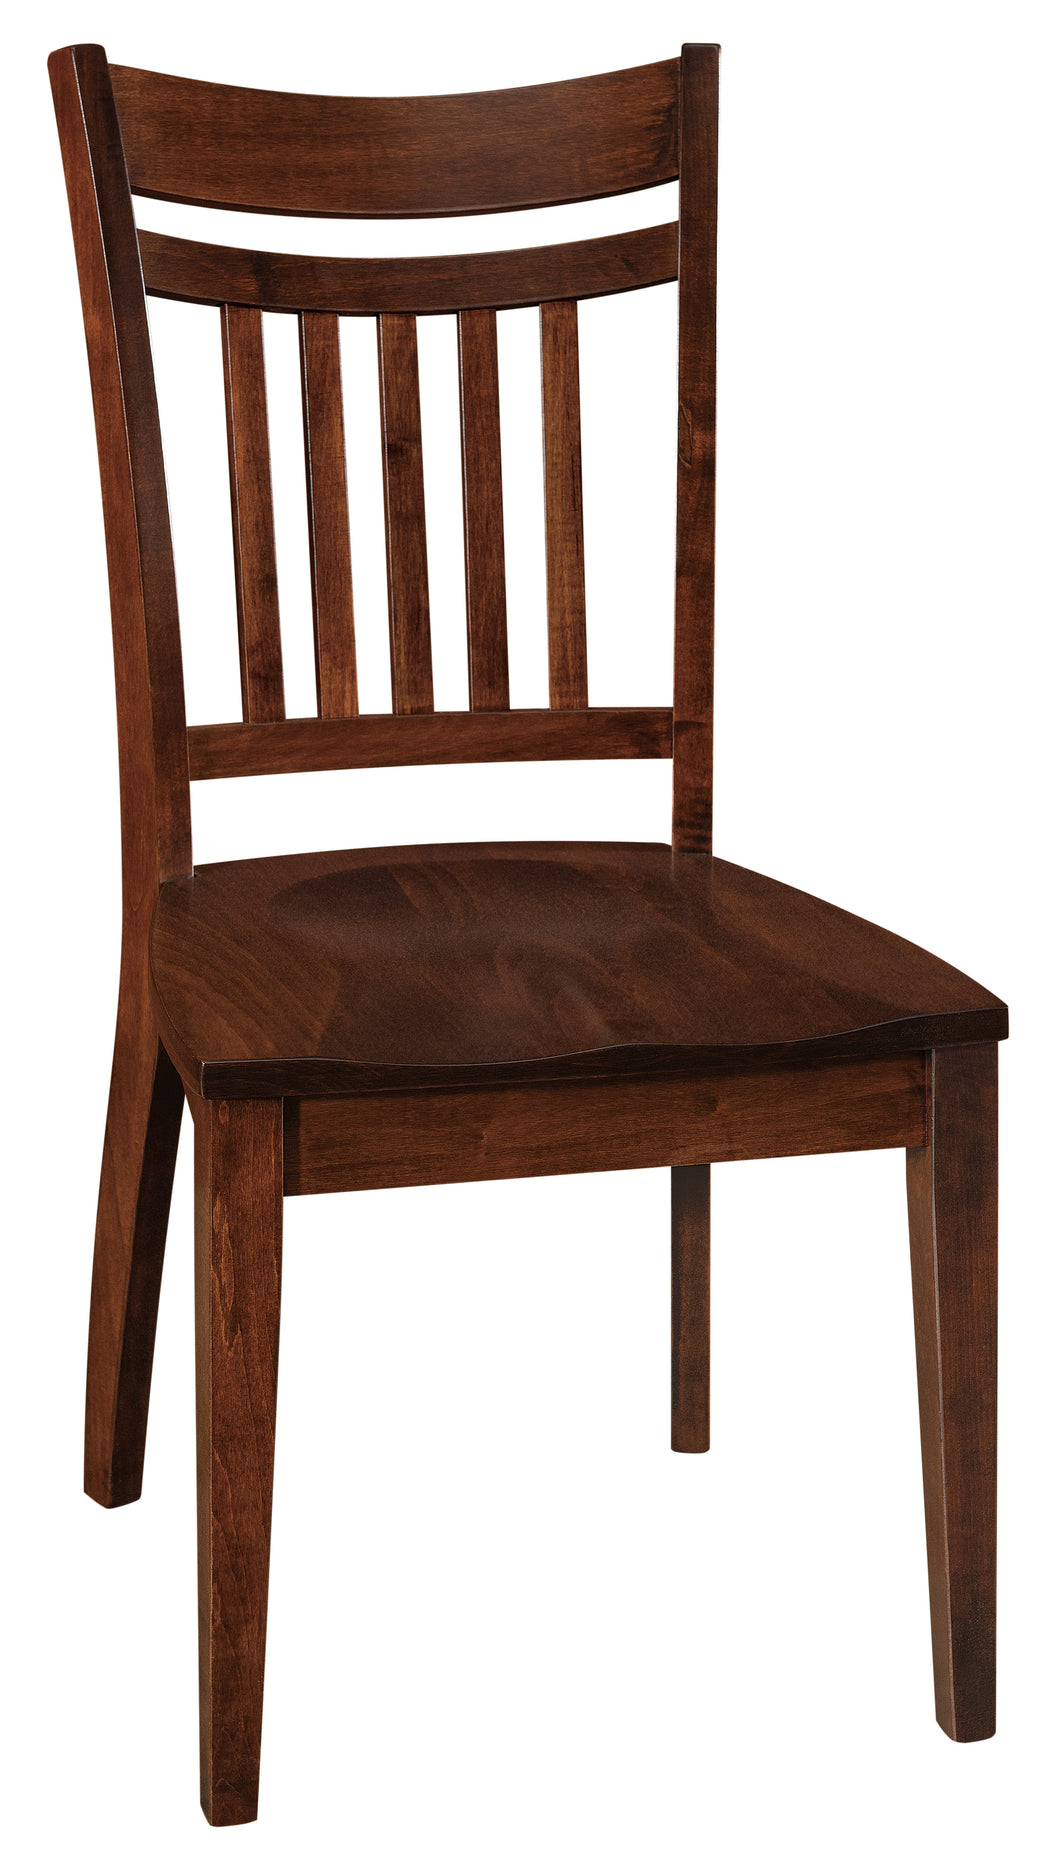 Arbordale Chair